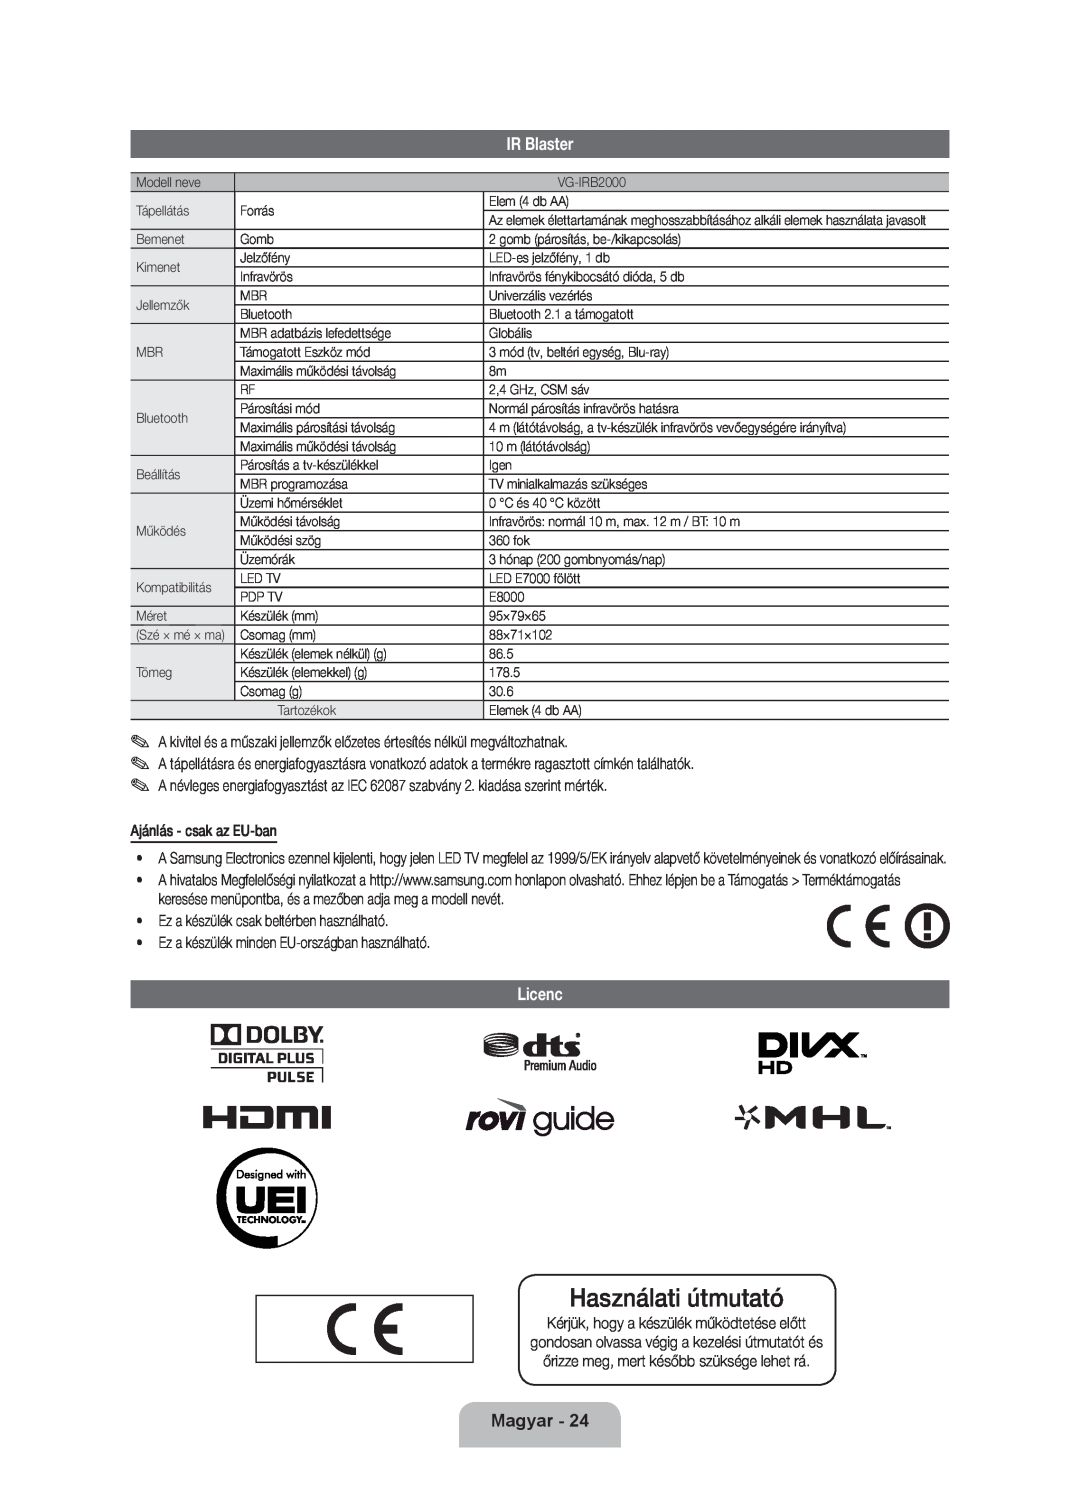 Samsung UE46ES8000SXXH, UE46ES8000SXXN manual Licenc, Használati útmutató, IR Blaster, Magyar, Ajánlás - csak az EU-ban 